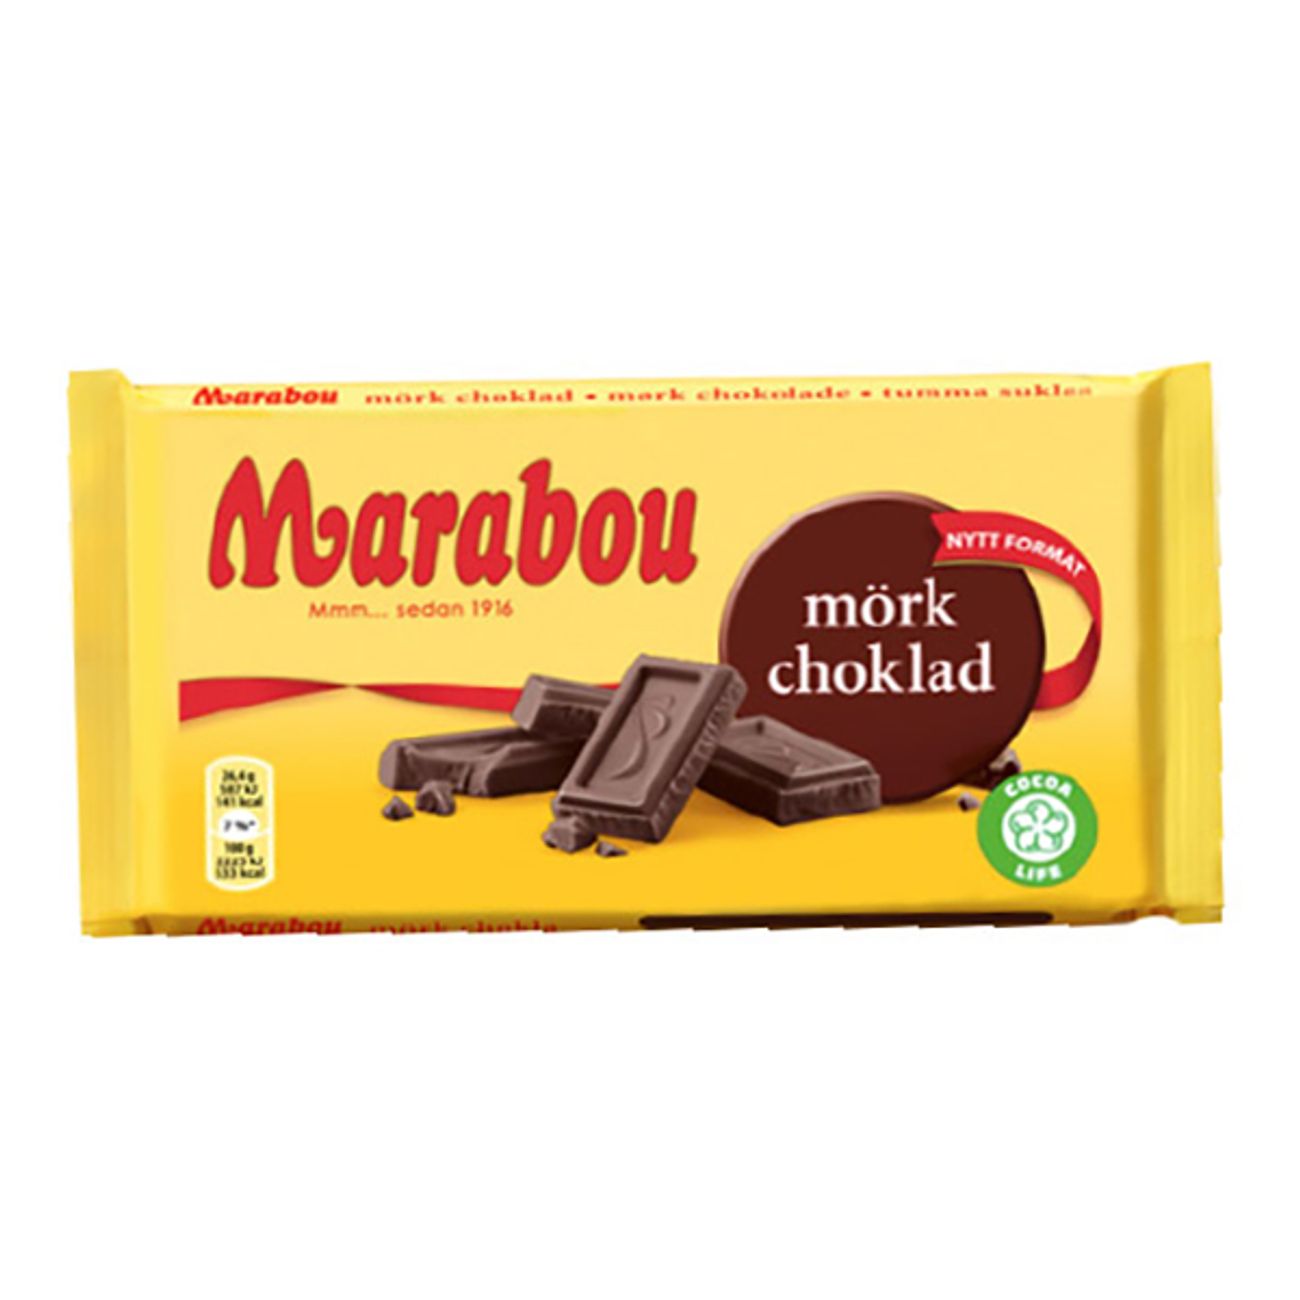 marabou-mork-choklad-73946-1